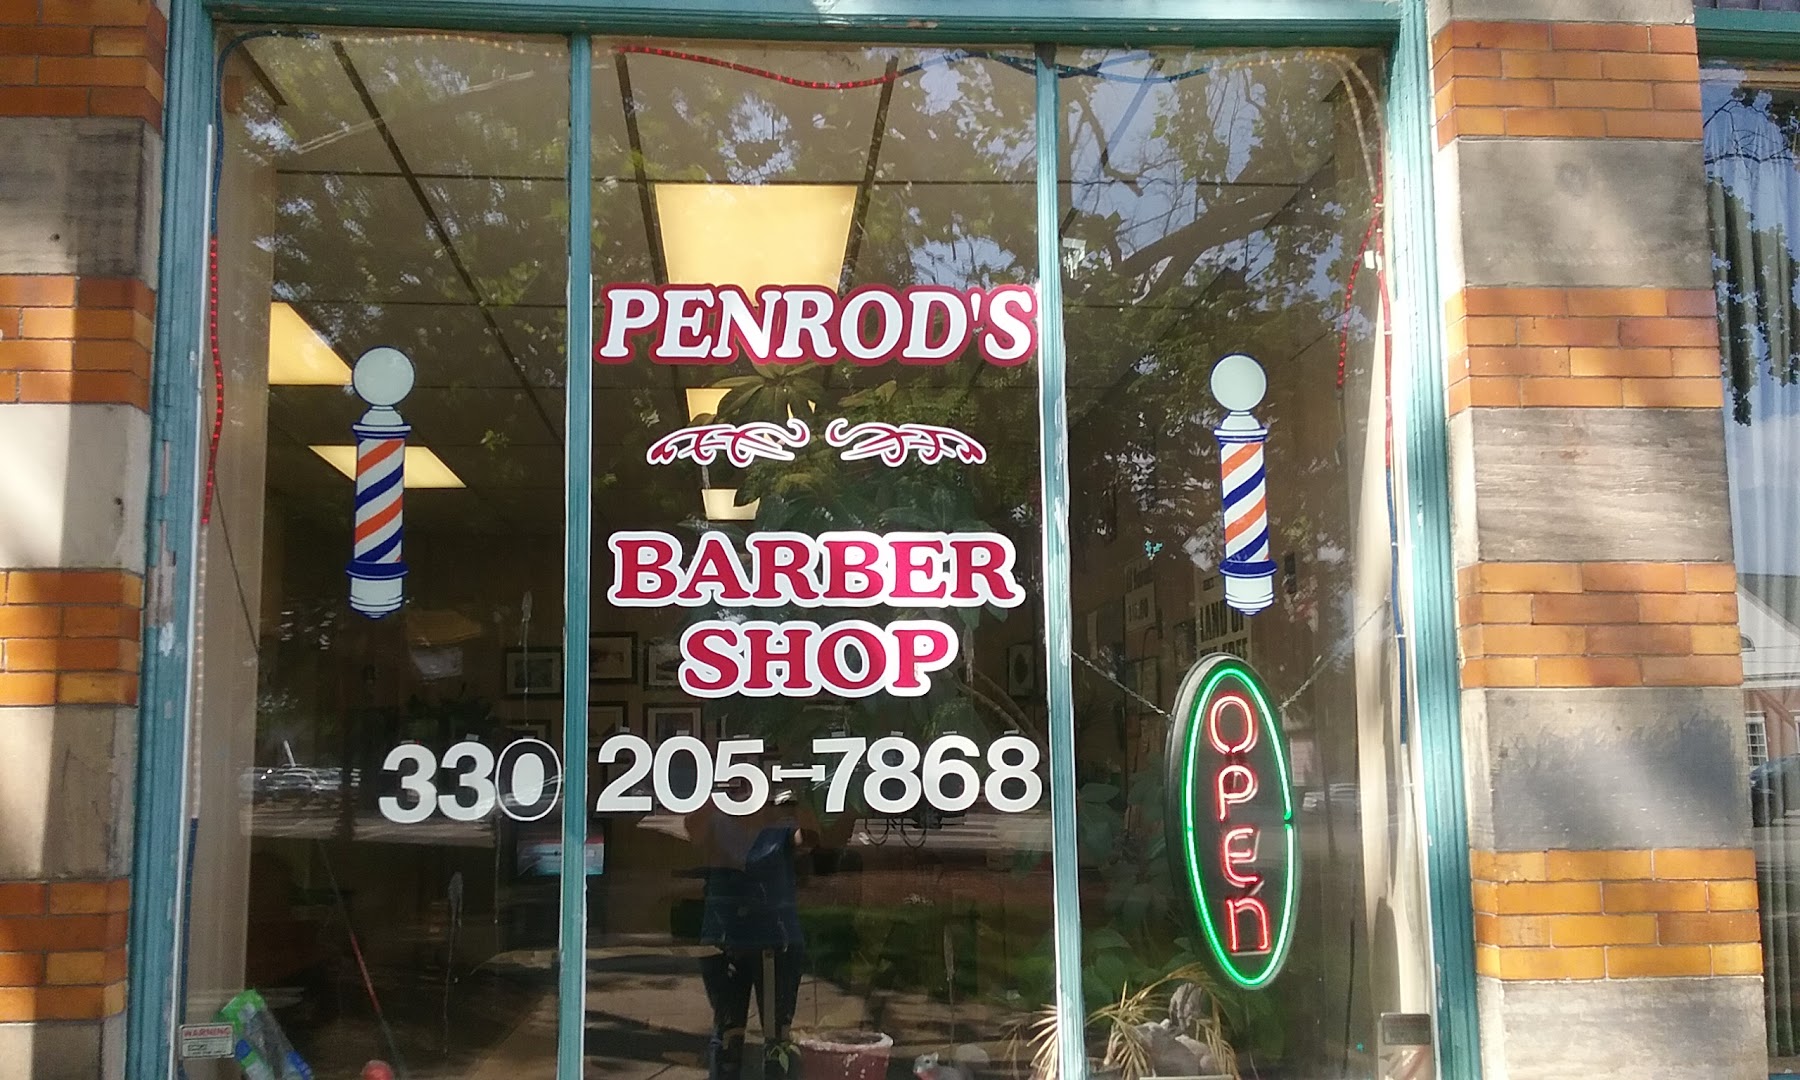 Penrod's Barber Shop